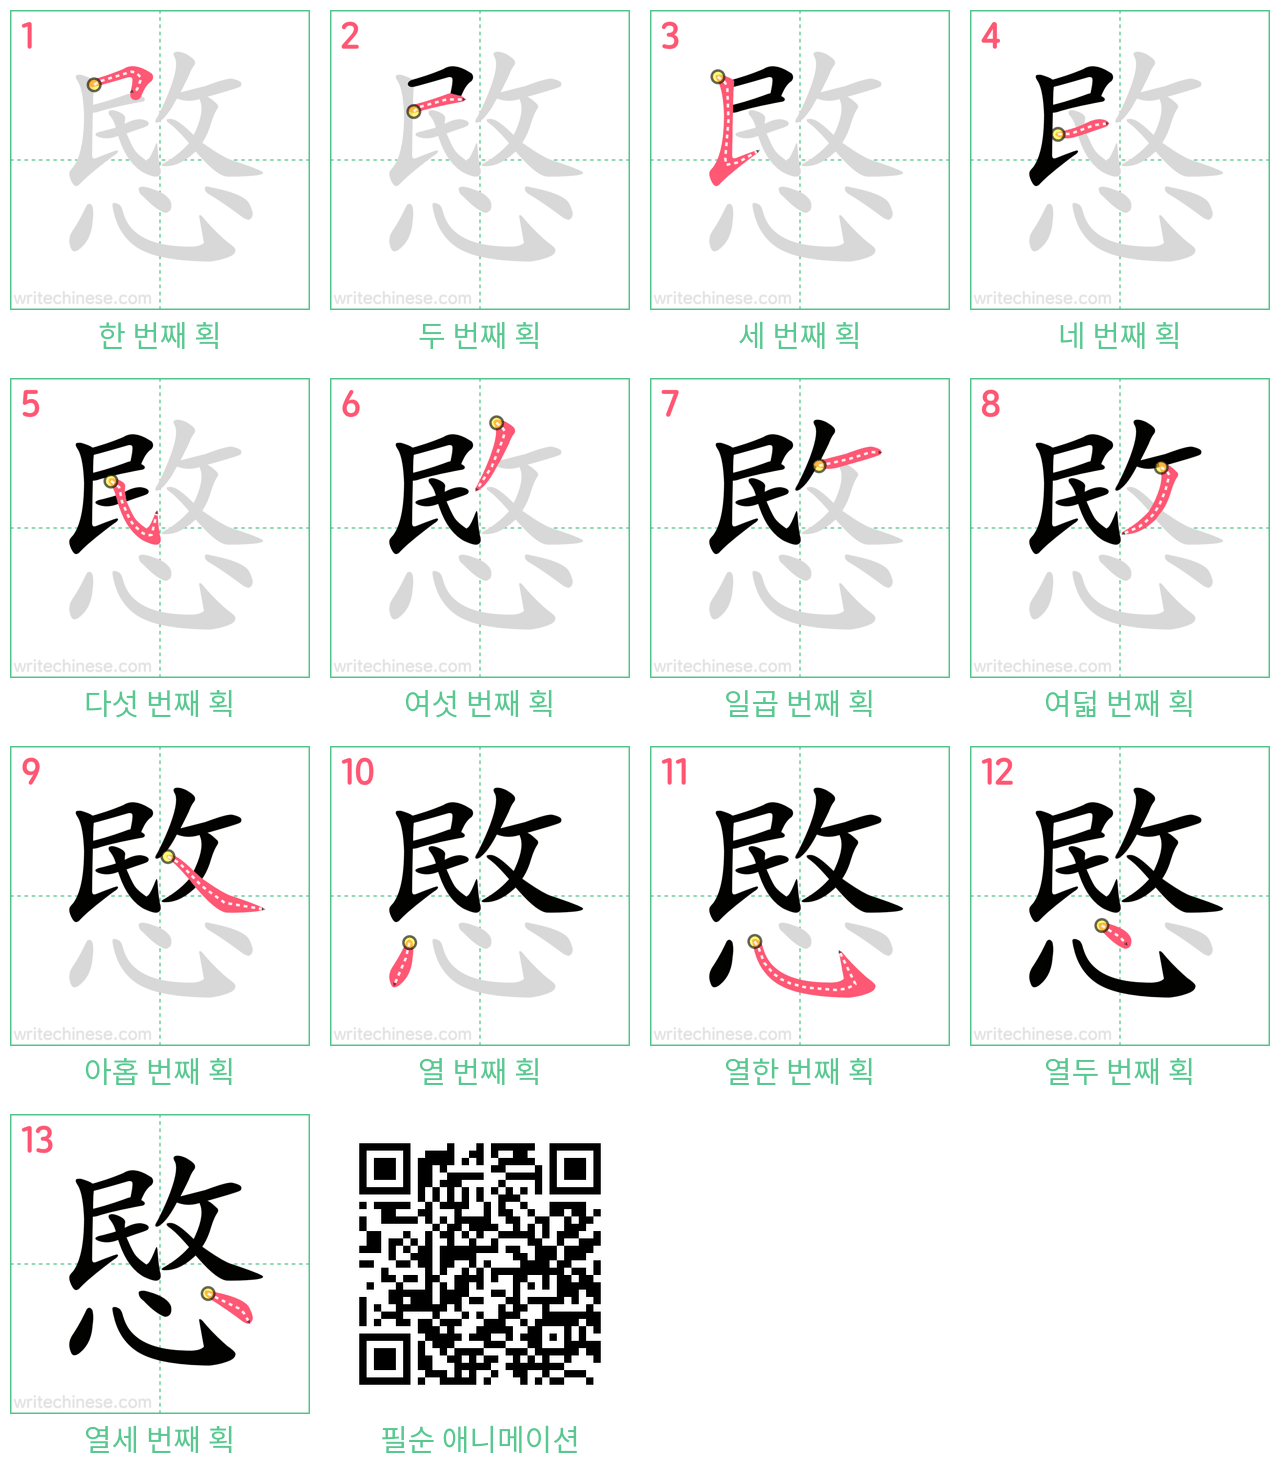 愍 step-by-step stroke order diagrams